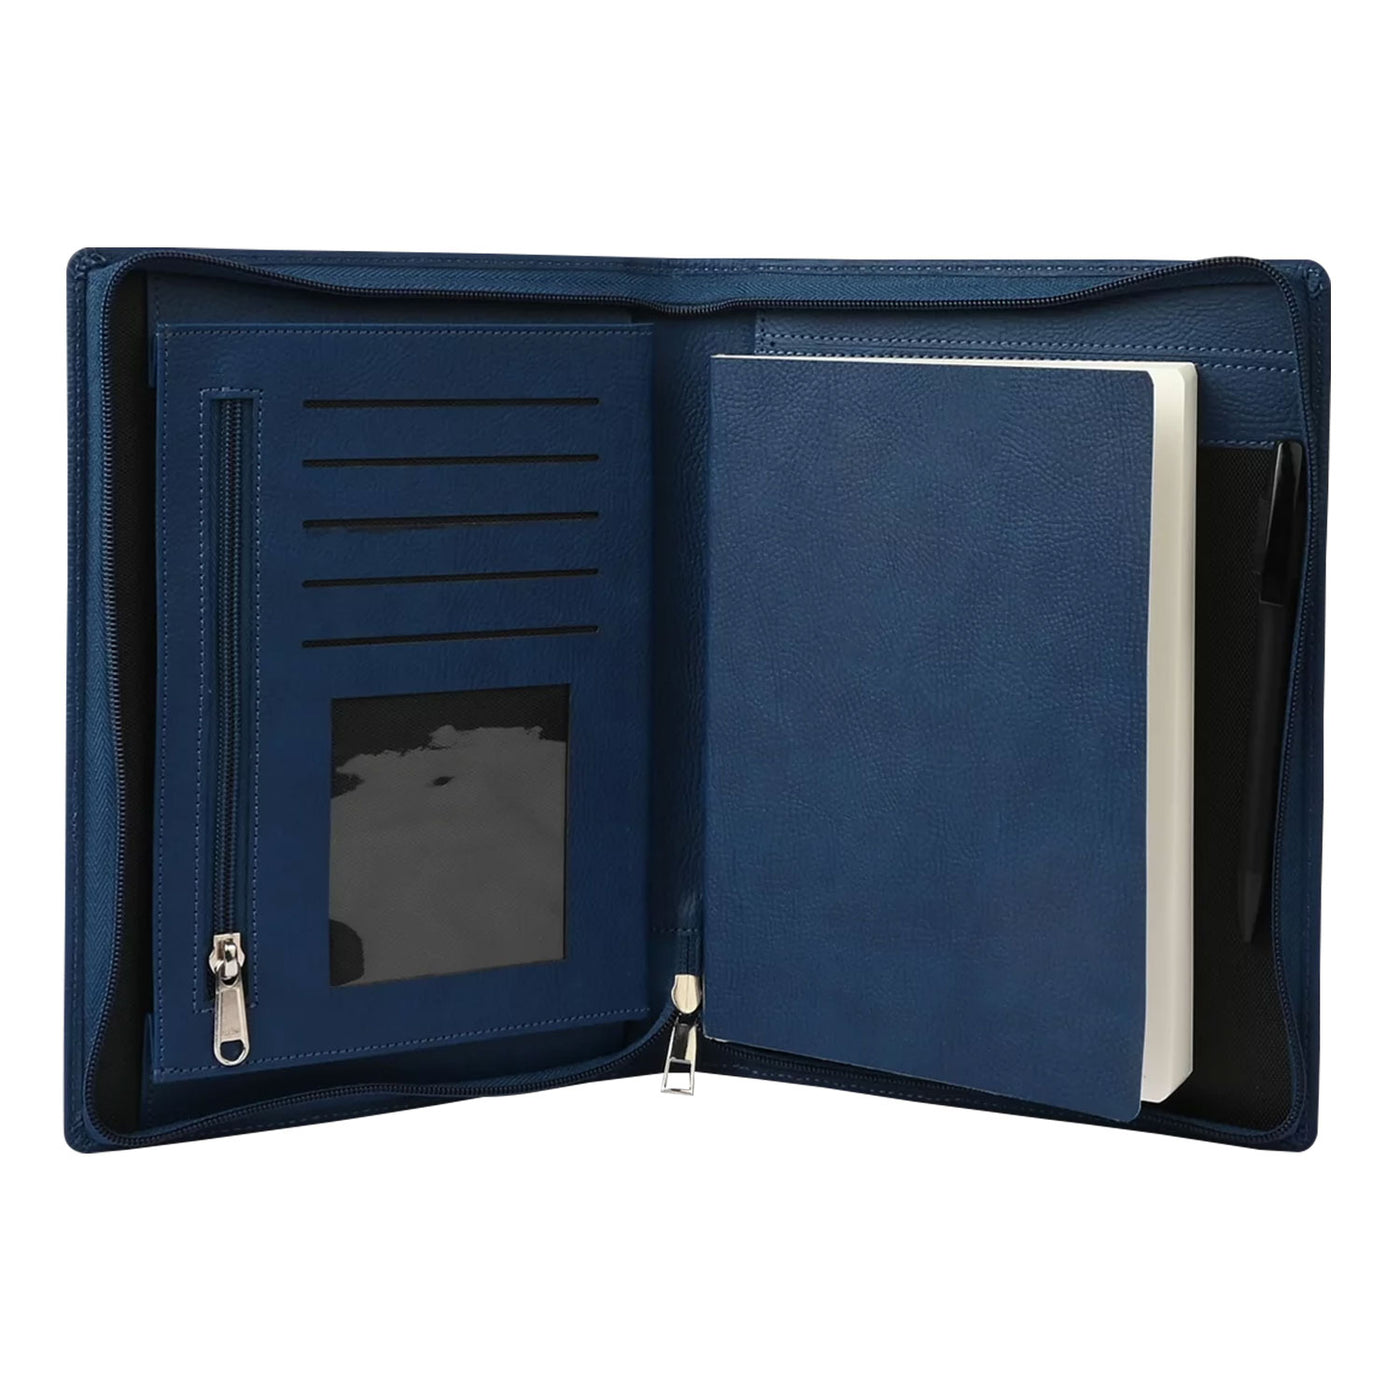 Scholar Vivant Folder Blue Notebook - A5 Ruled 3